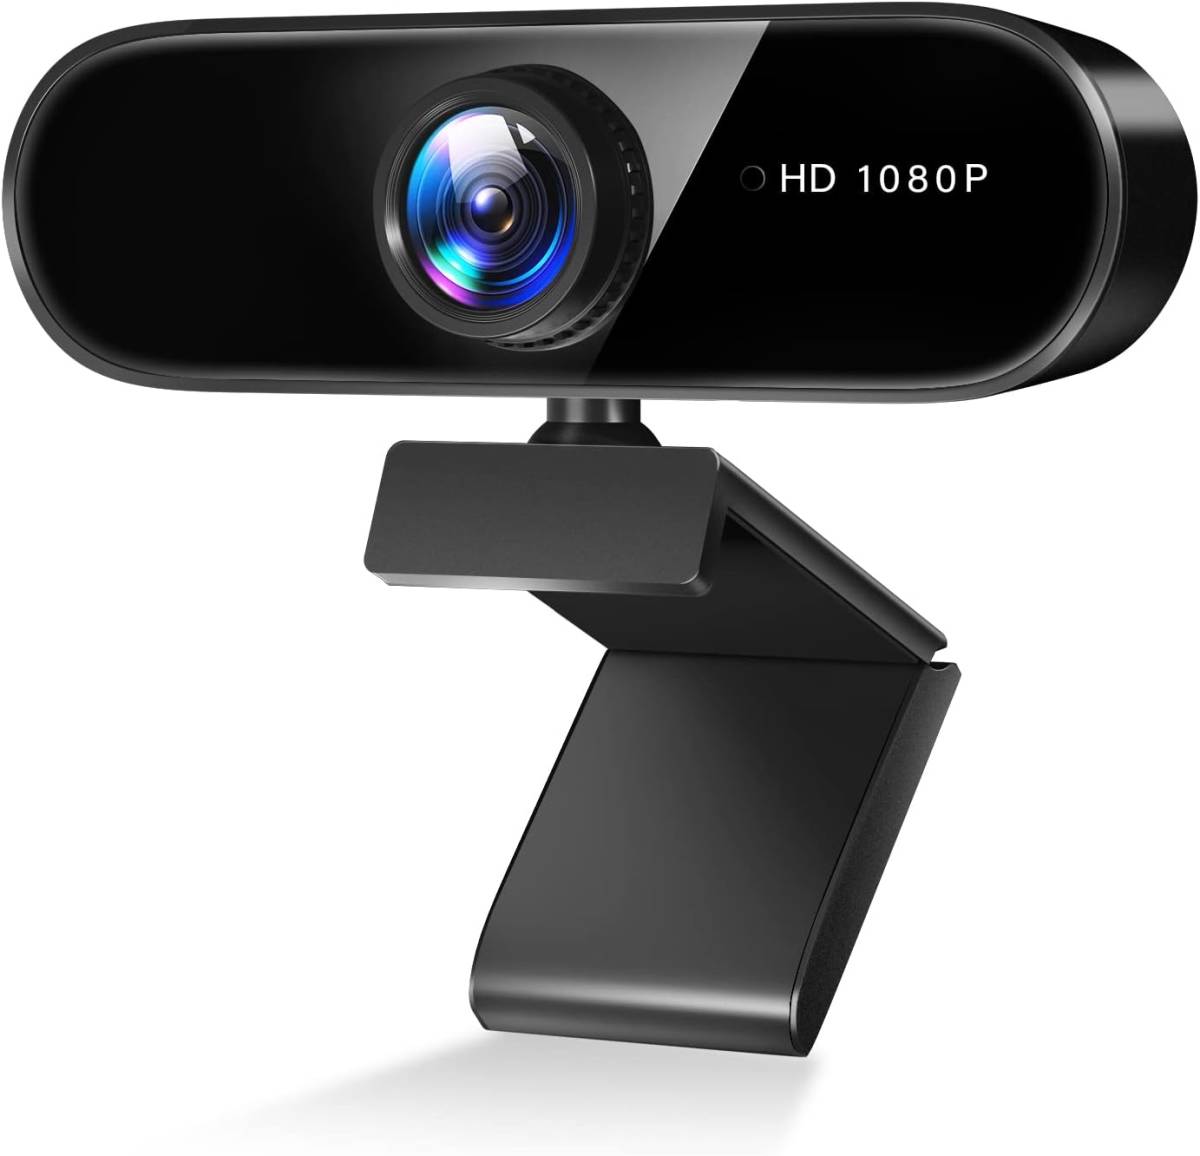 ウェブカメラ フルHD 1080P高 画質 200万画素 マイク内蔵 USBカメラ 自動光補正 30FPS 超広角95° クリップ/スタンド式 U77